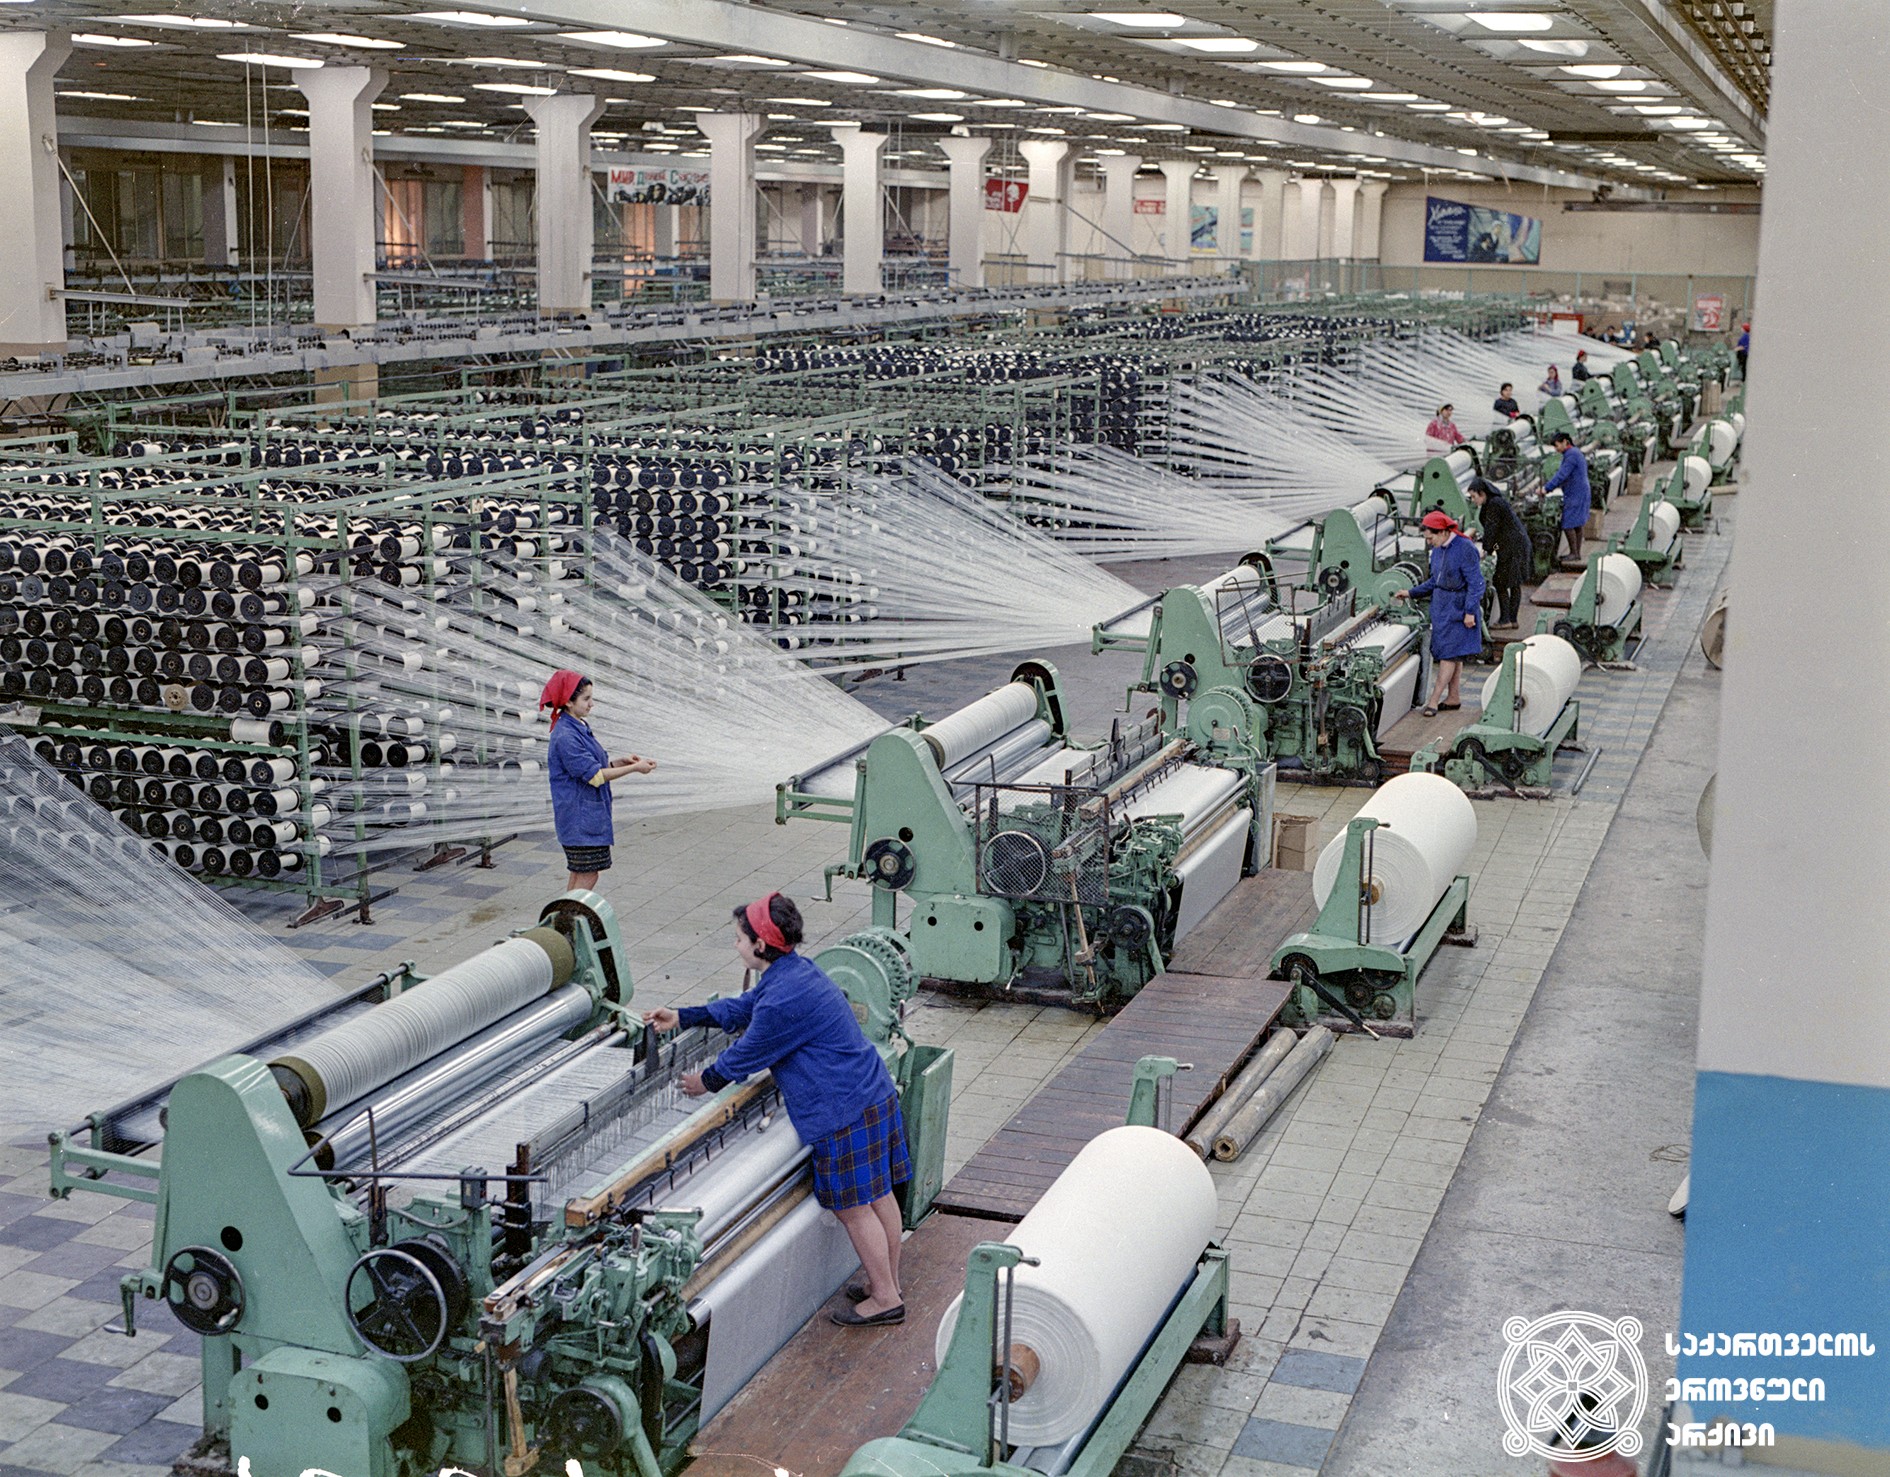 რუსთავის ქიმბოჭკოს ქარხანა, 1977 წელი. 
<br>
Rustavi Chemical fiber factory, 1977.